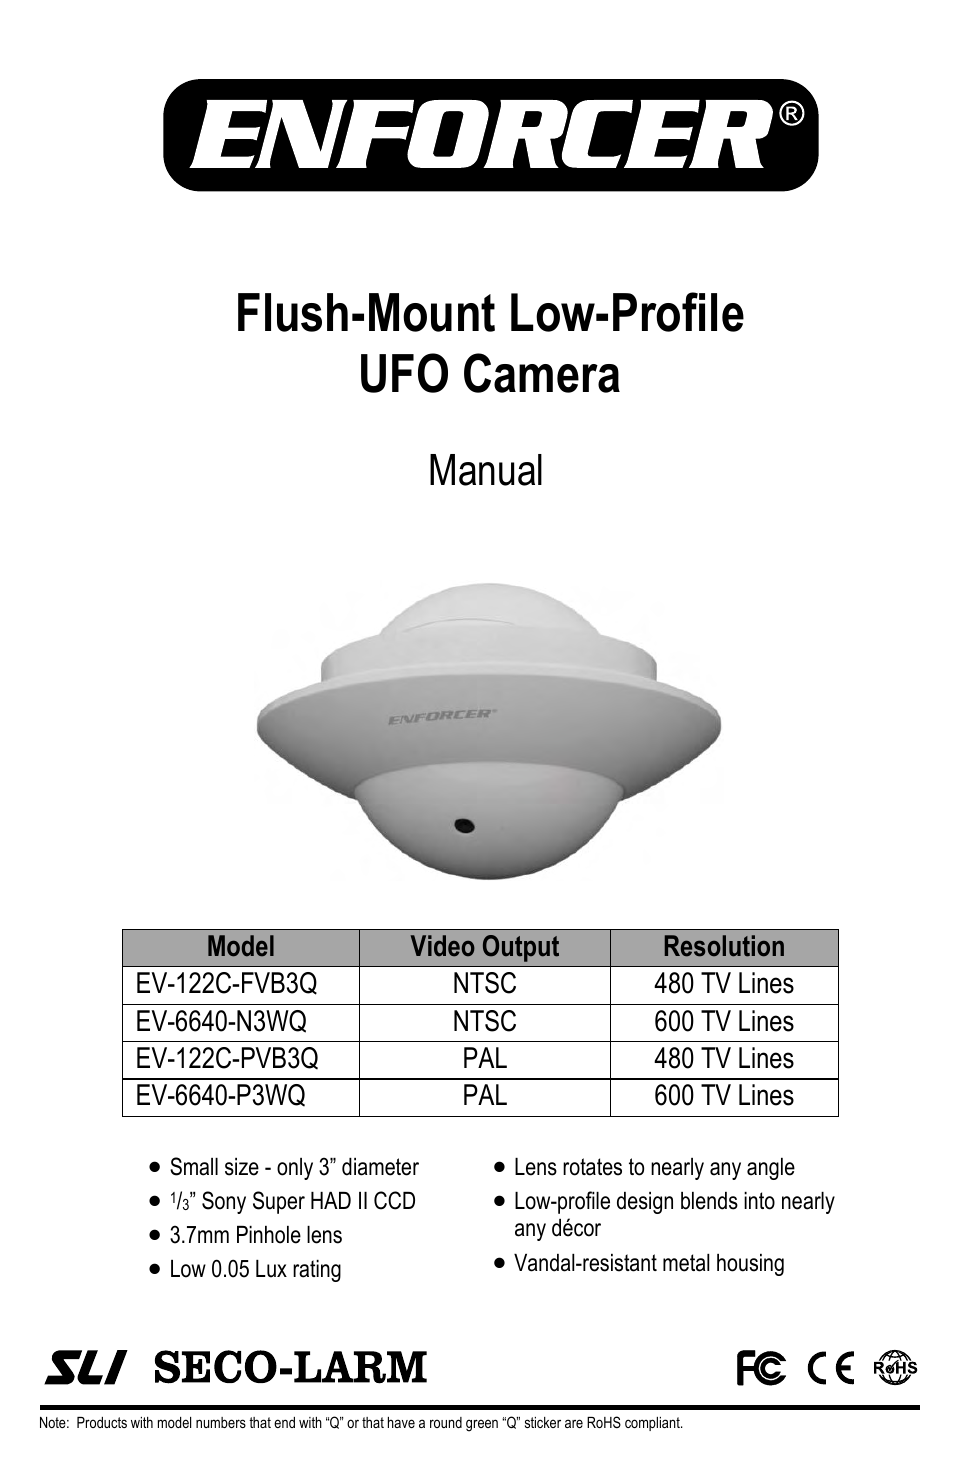 Flush-Mount Low-Profile UFO Camera EV-6640-P3WQ